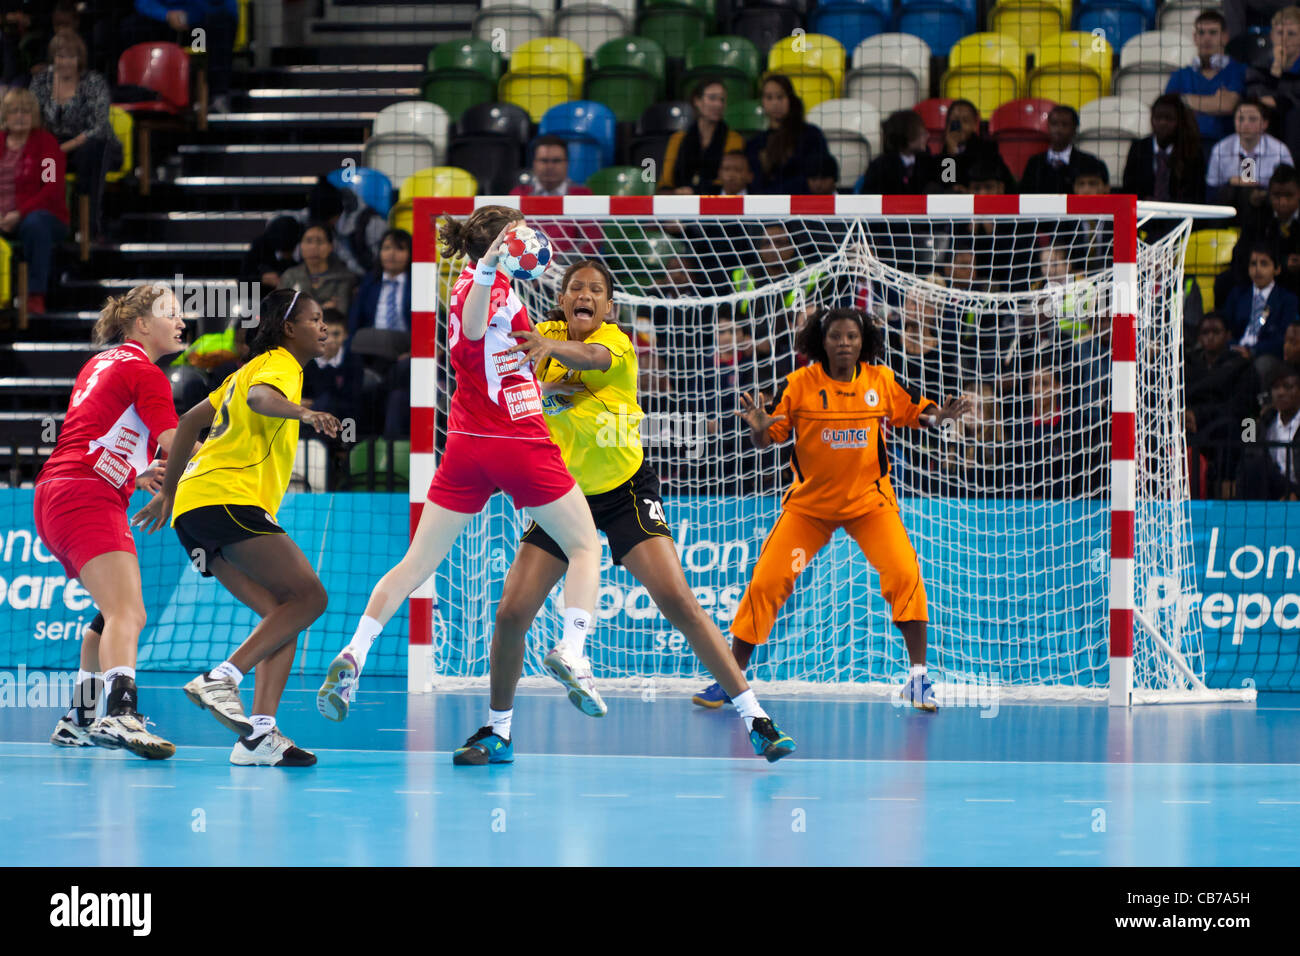 Sonja FREY (n°5 - AUT) pousses pour objectif, l'Angola / Autriche au Women's Londres Handball Cup. Tenue à l'Arène de handball, au Royaume-Uni. Banque D'Images